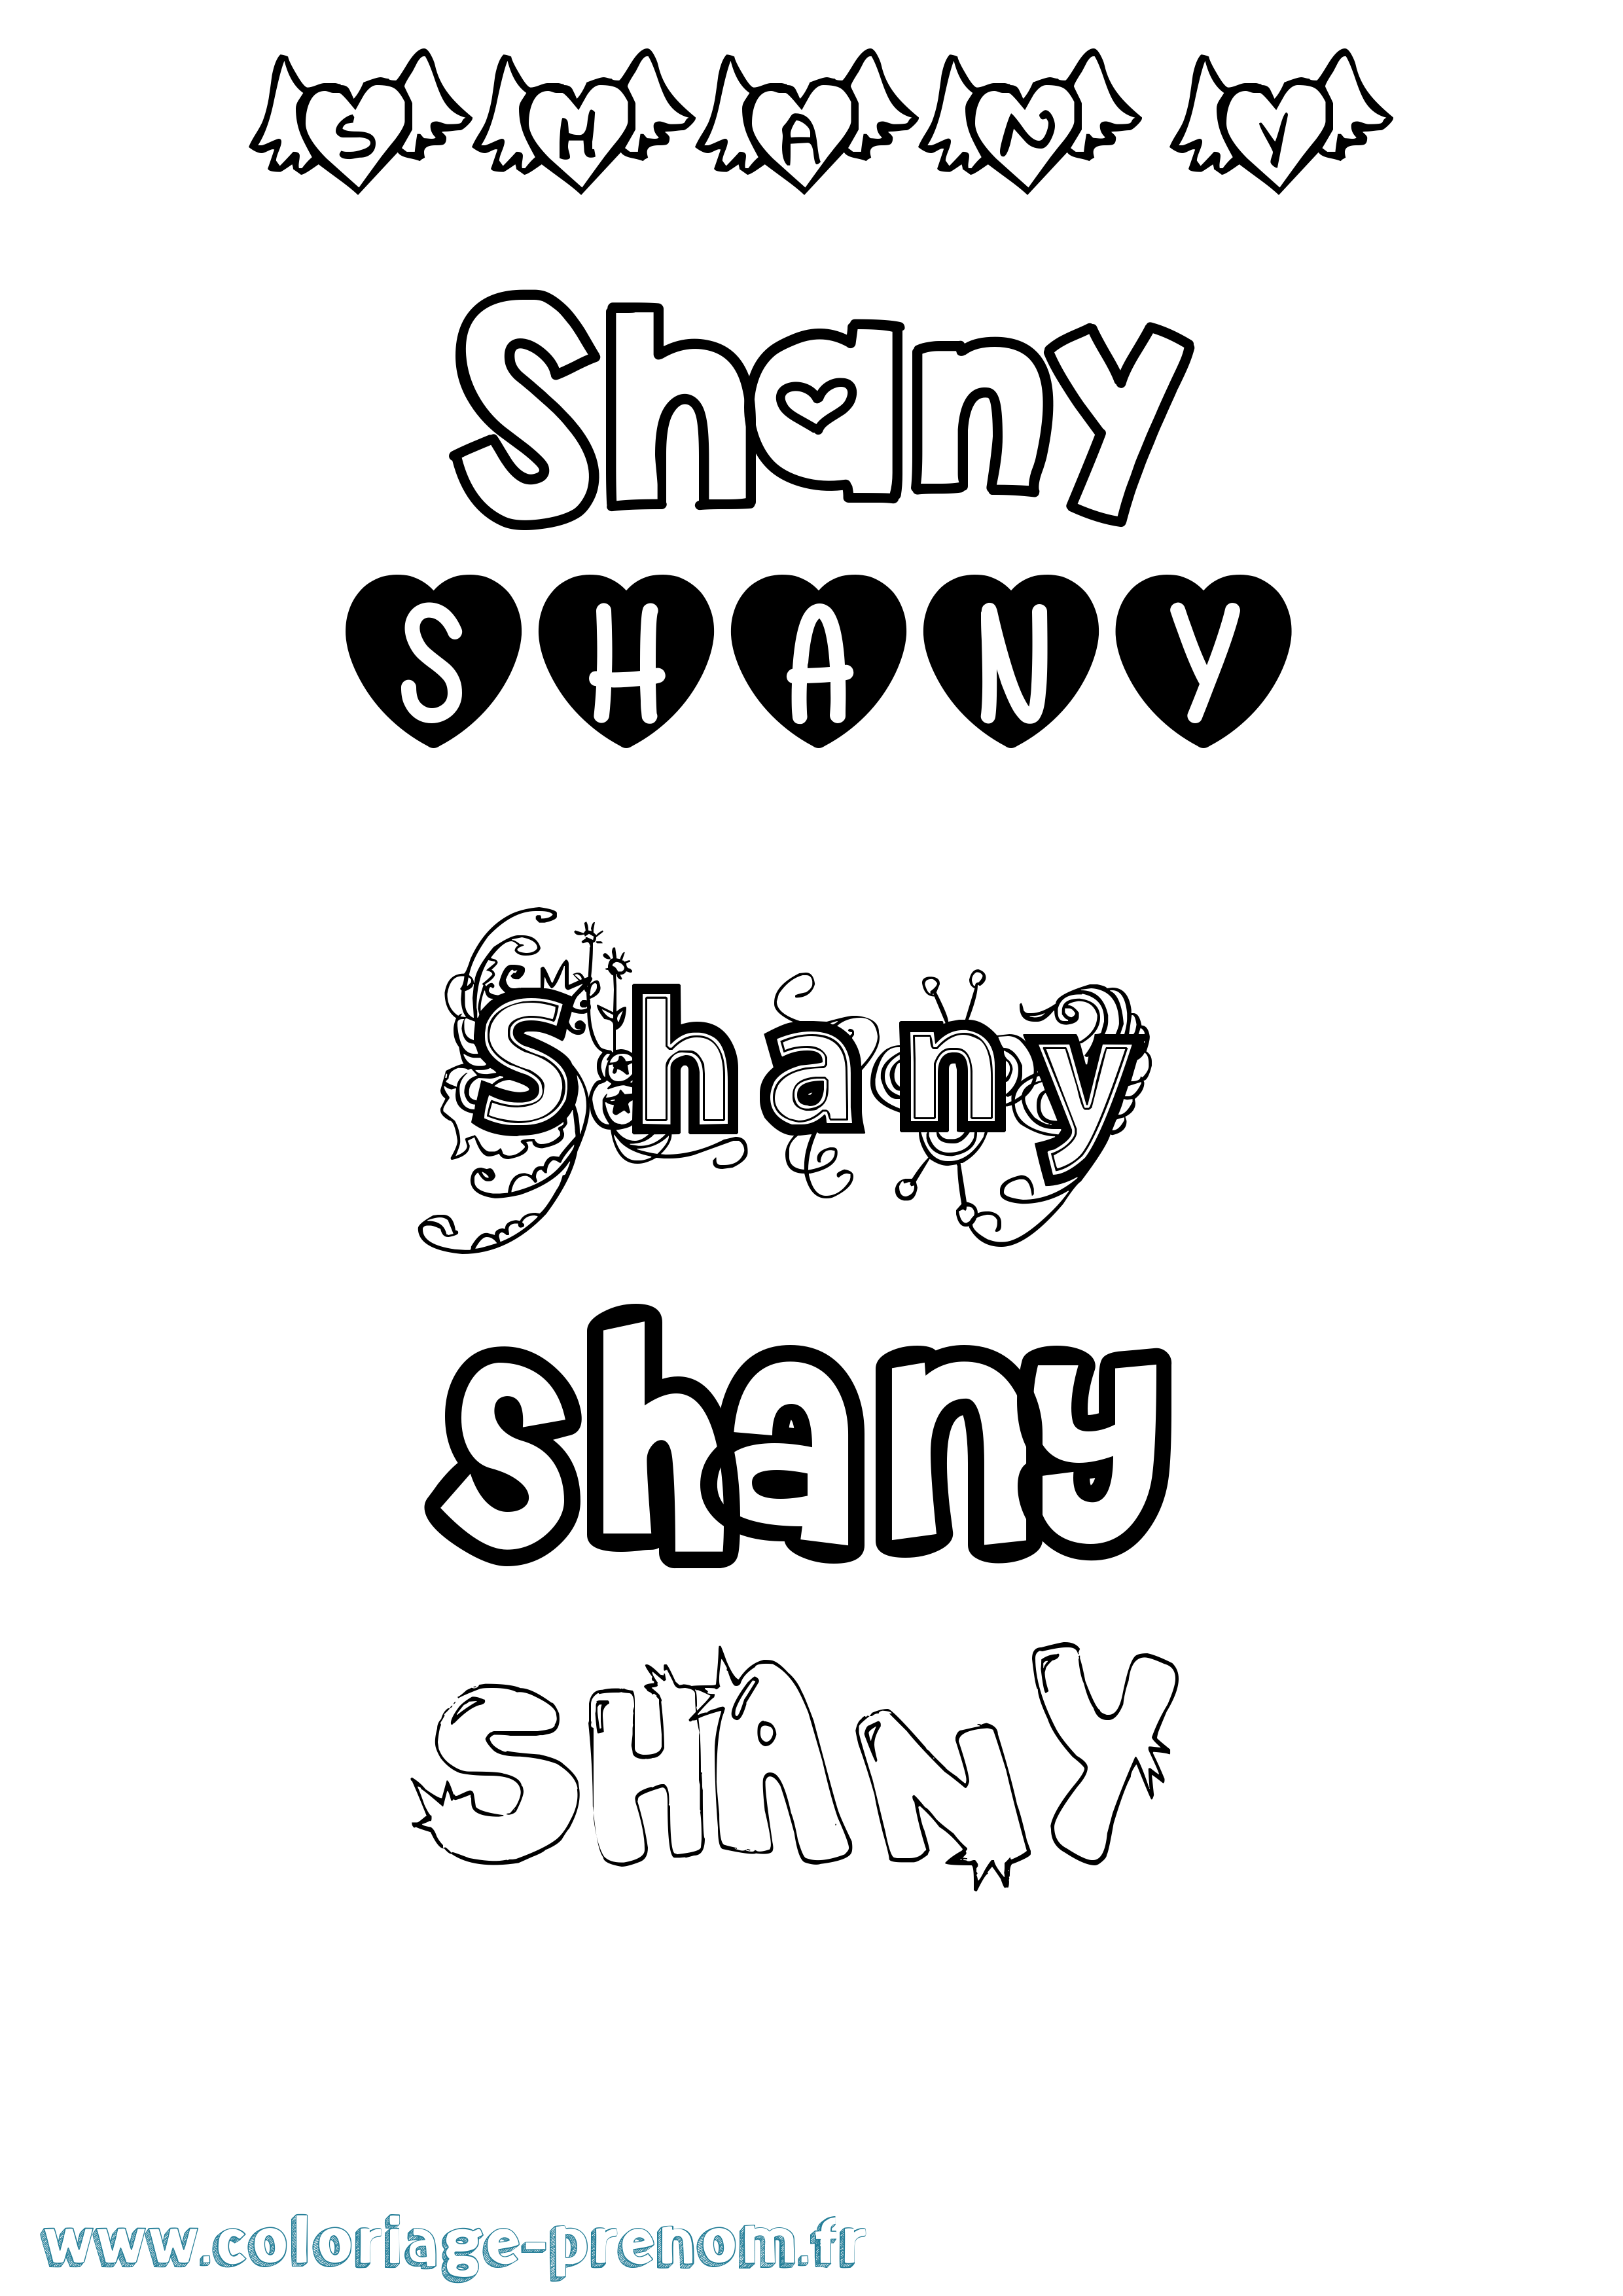 Coloriage prénom Shany